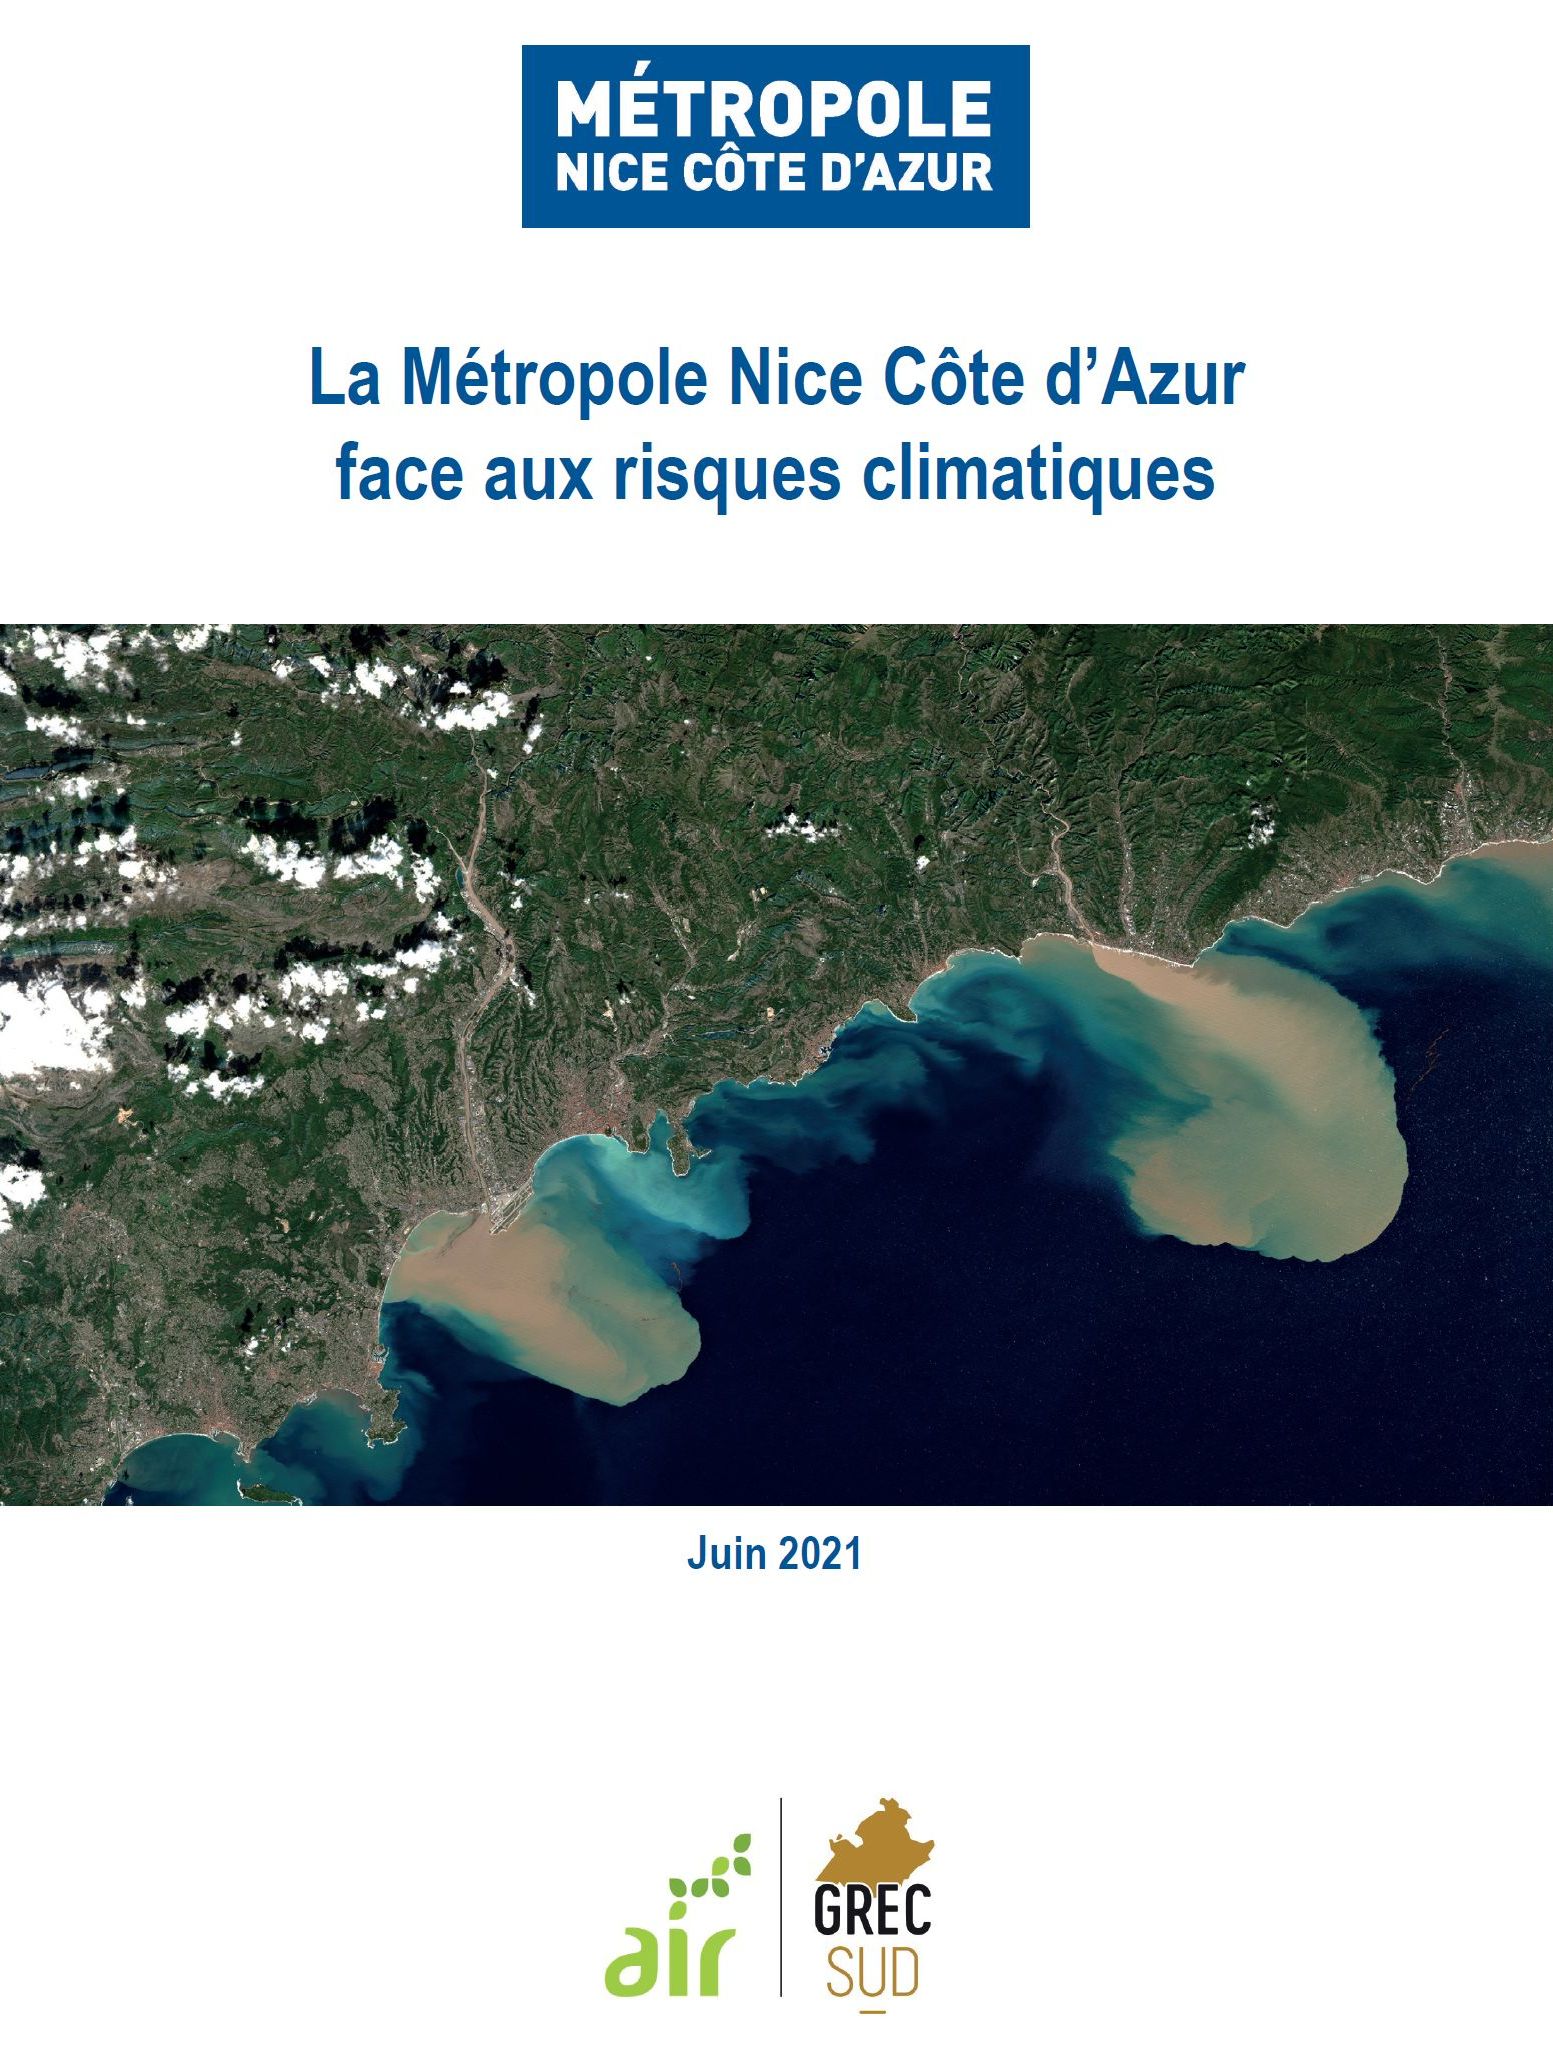 La Métropole Nice Côte d’Azur face aux risques climatiques